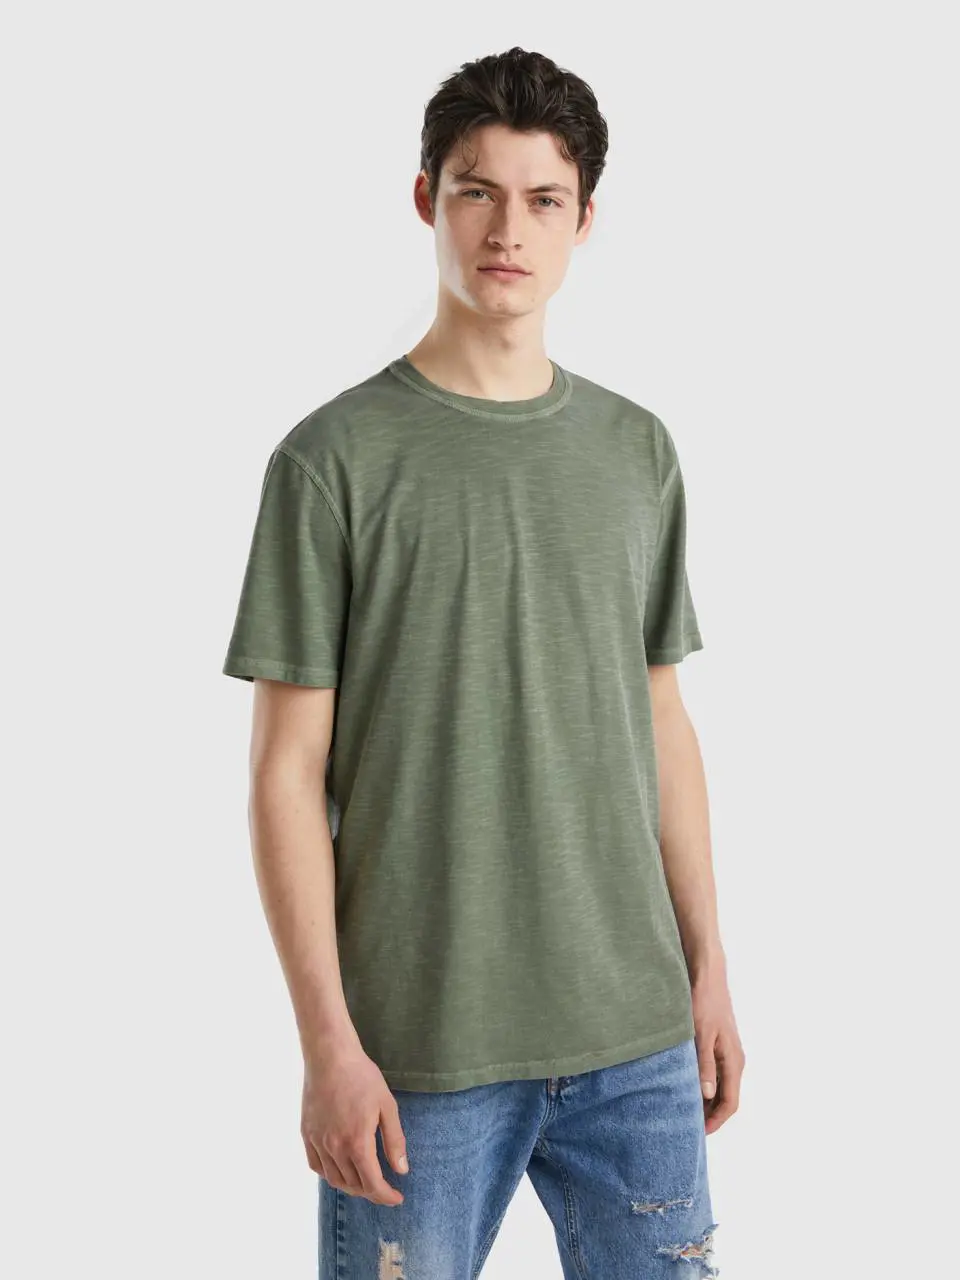 Benetton t-shirt in lightweight cotton. 1